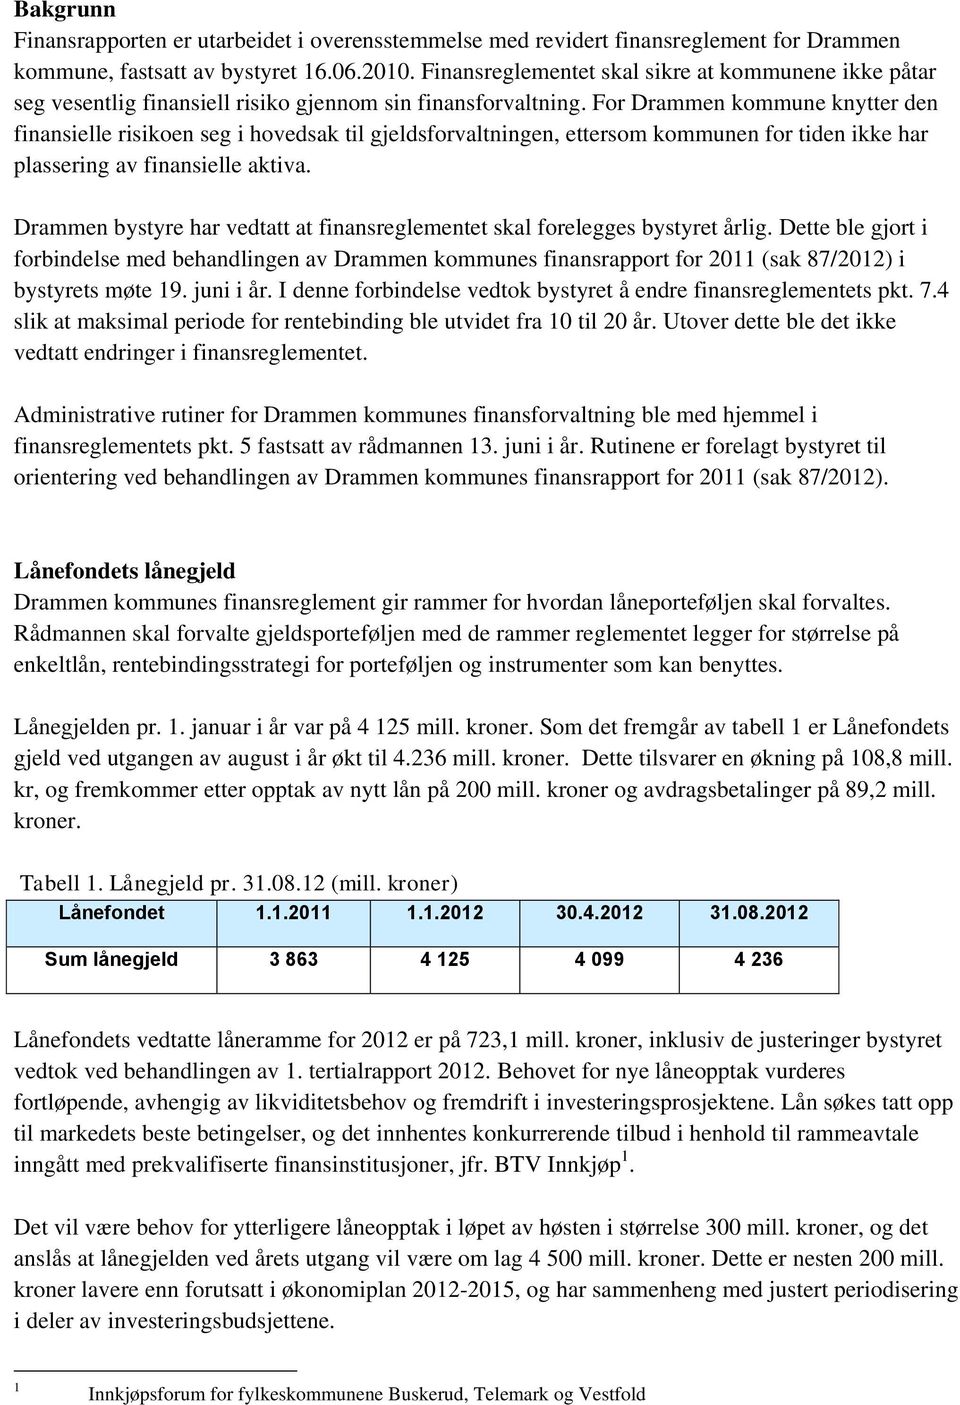 For Drammen kommune knytter den finansielle risikoen seg i hovedsak til gjeldsforvaltningen, ettersom kommunen for tiden ikke har plassering av finansielle aktiva.